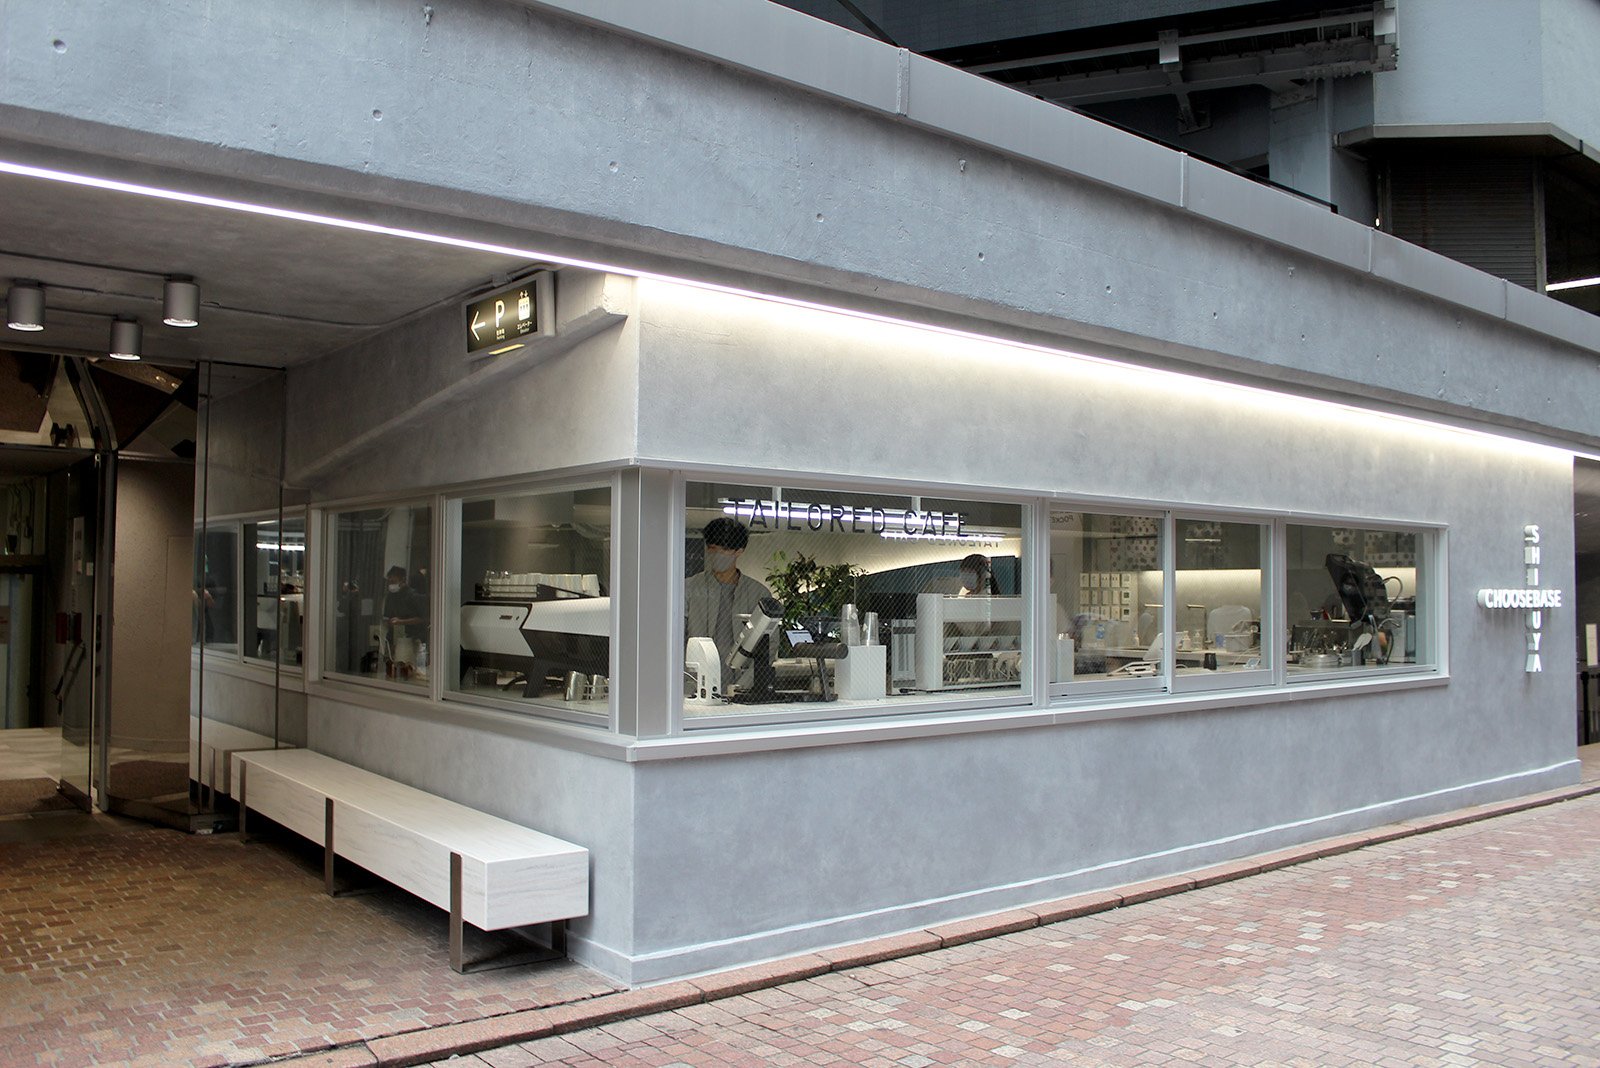 「TAILORED CAFE」は渋谷ロフトから公園通りへ抜ける間坂に面したスペースに出店